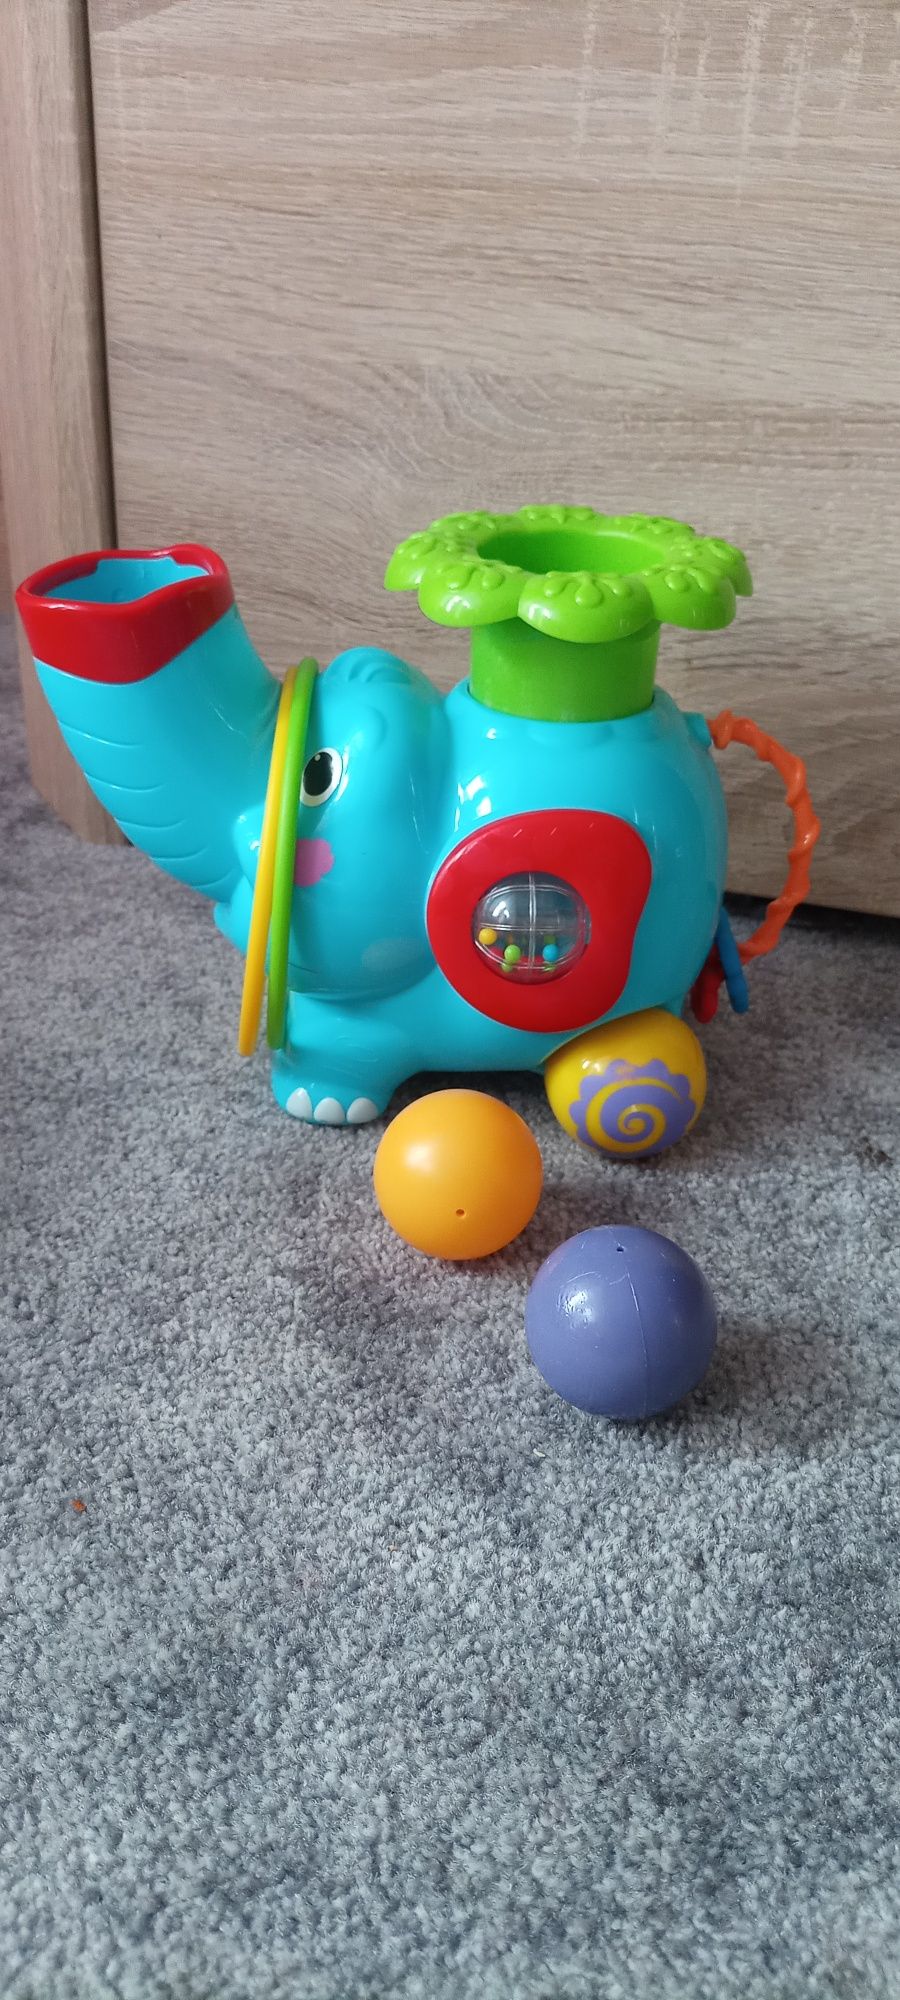 Słonik zabawka interaktywna, strzela piłkami